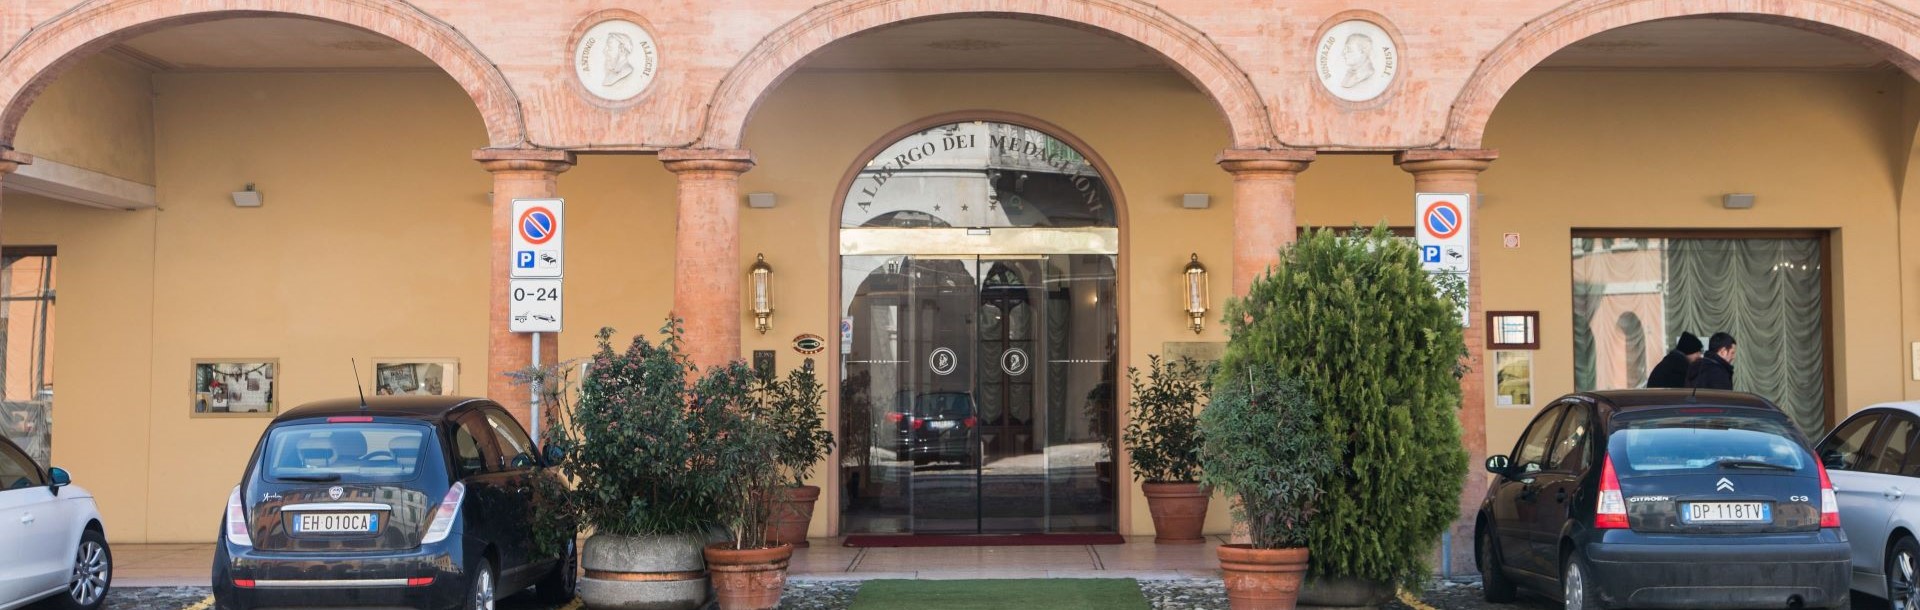 Hotel Dei Medaglioni, Correggio